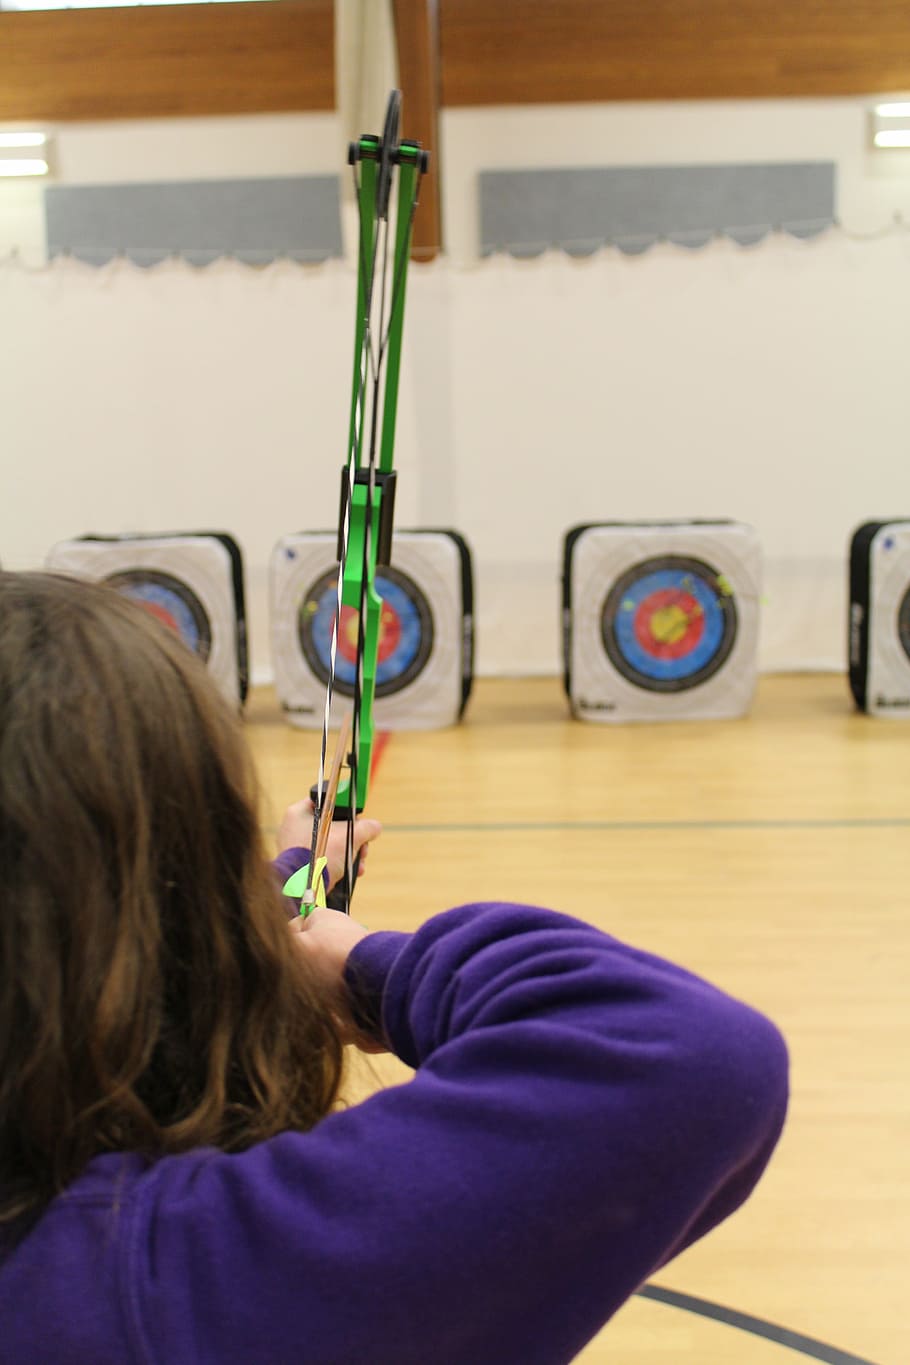 aiming, target, archer, aim, bullseye, bow and arrow, focus, skill, shooting, shoot